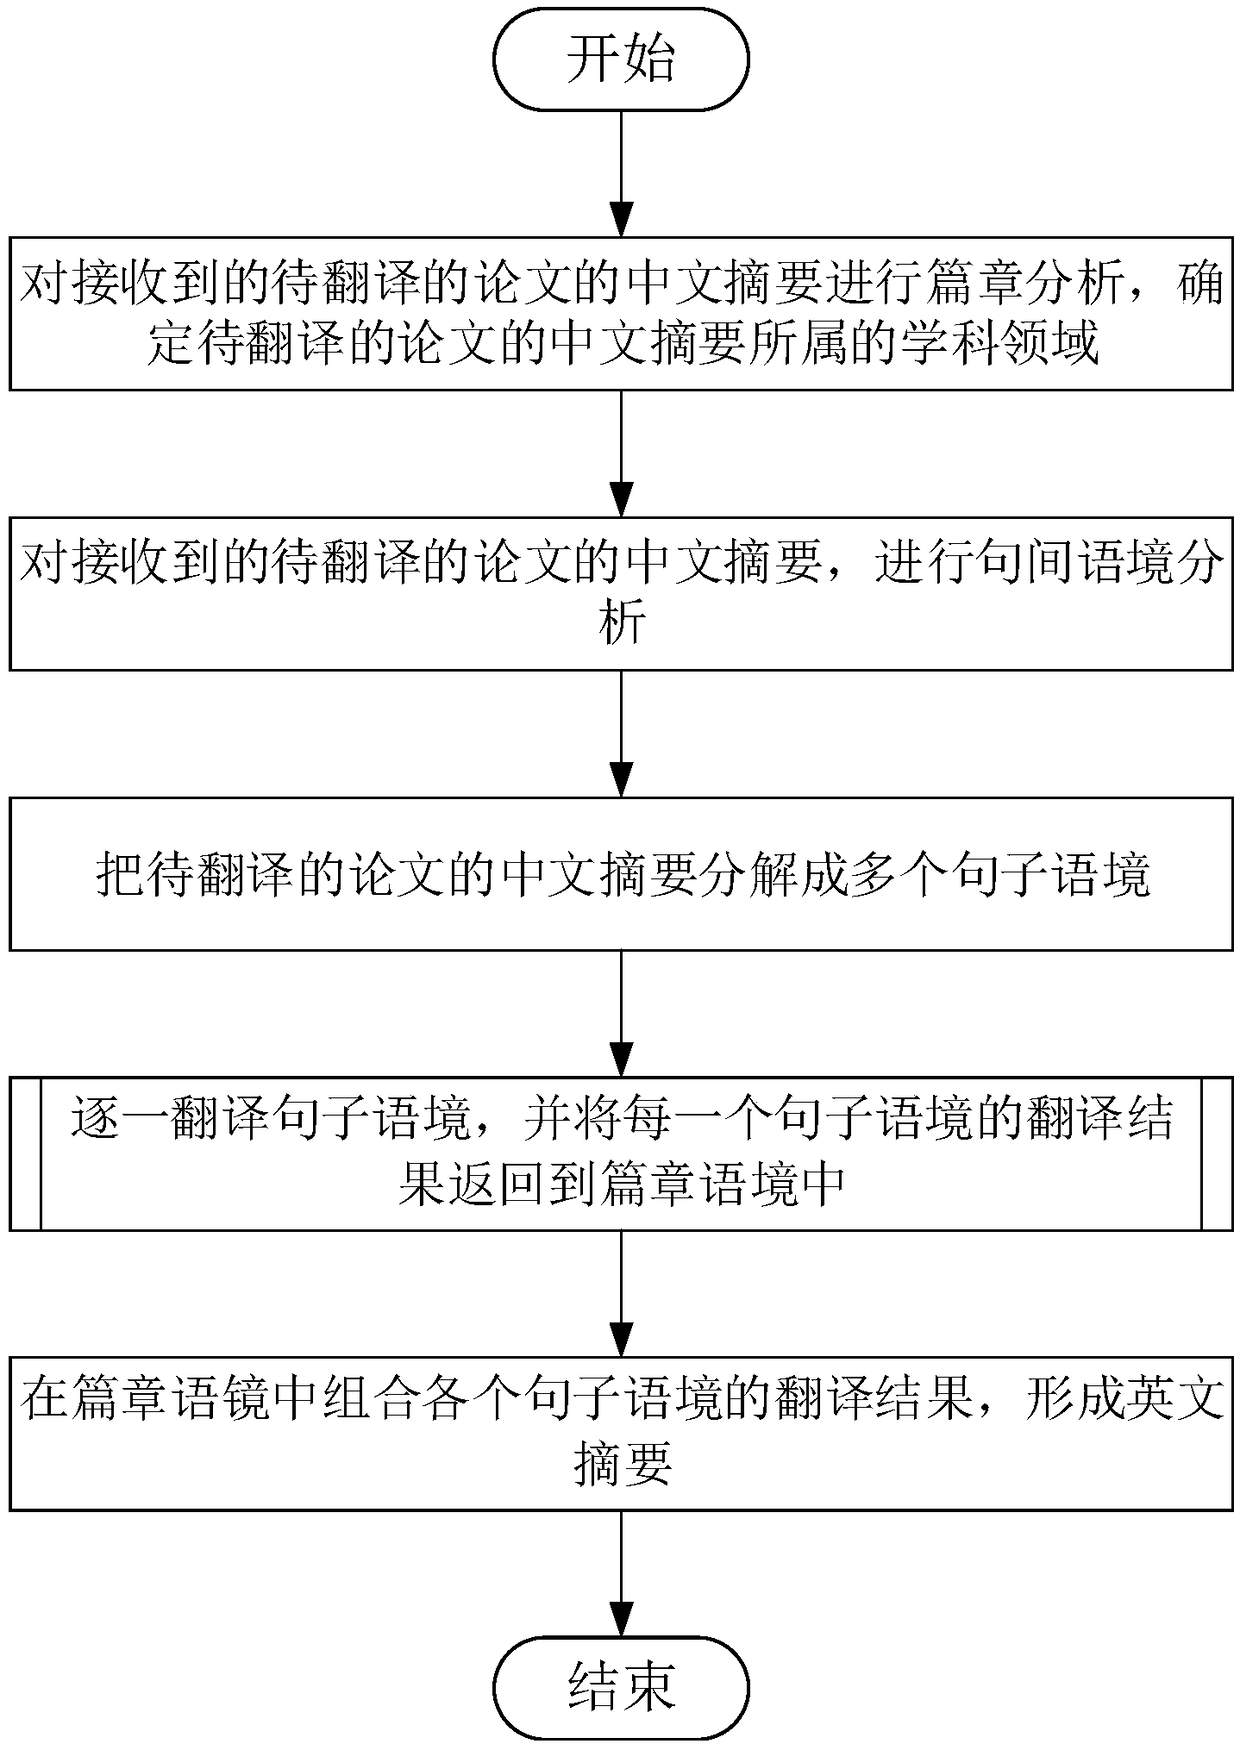 Chinese-English machine translation method based on context iteration analysis